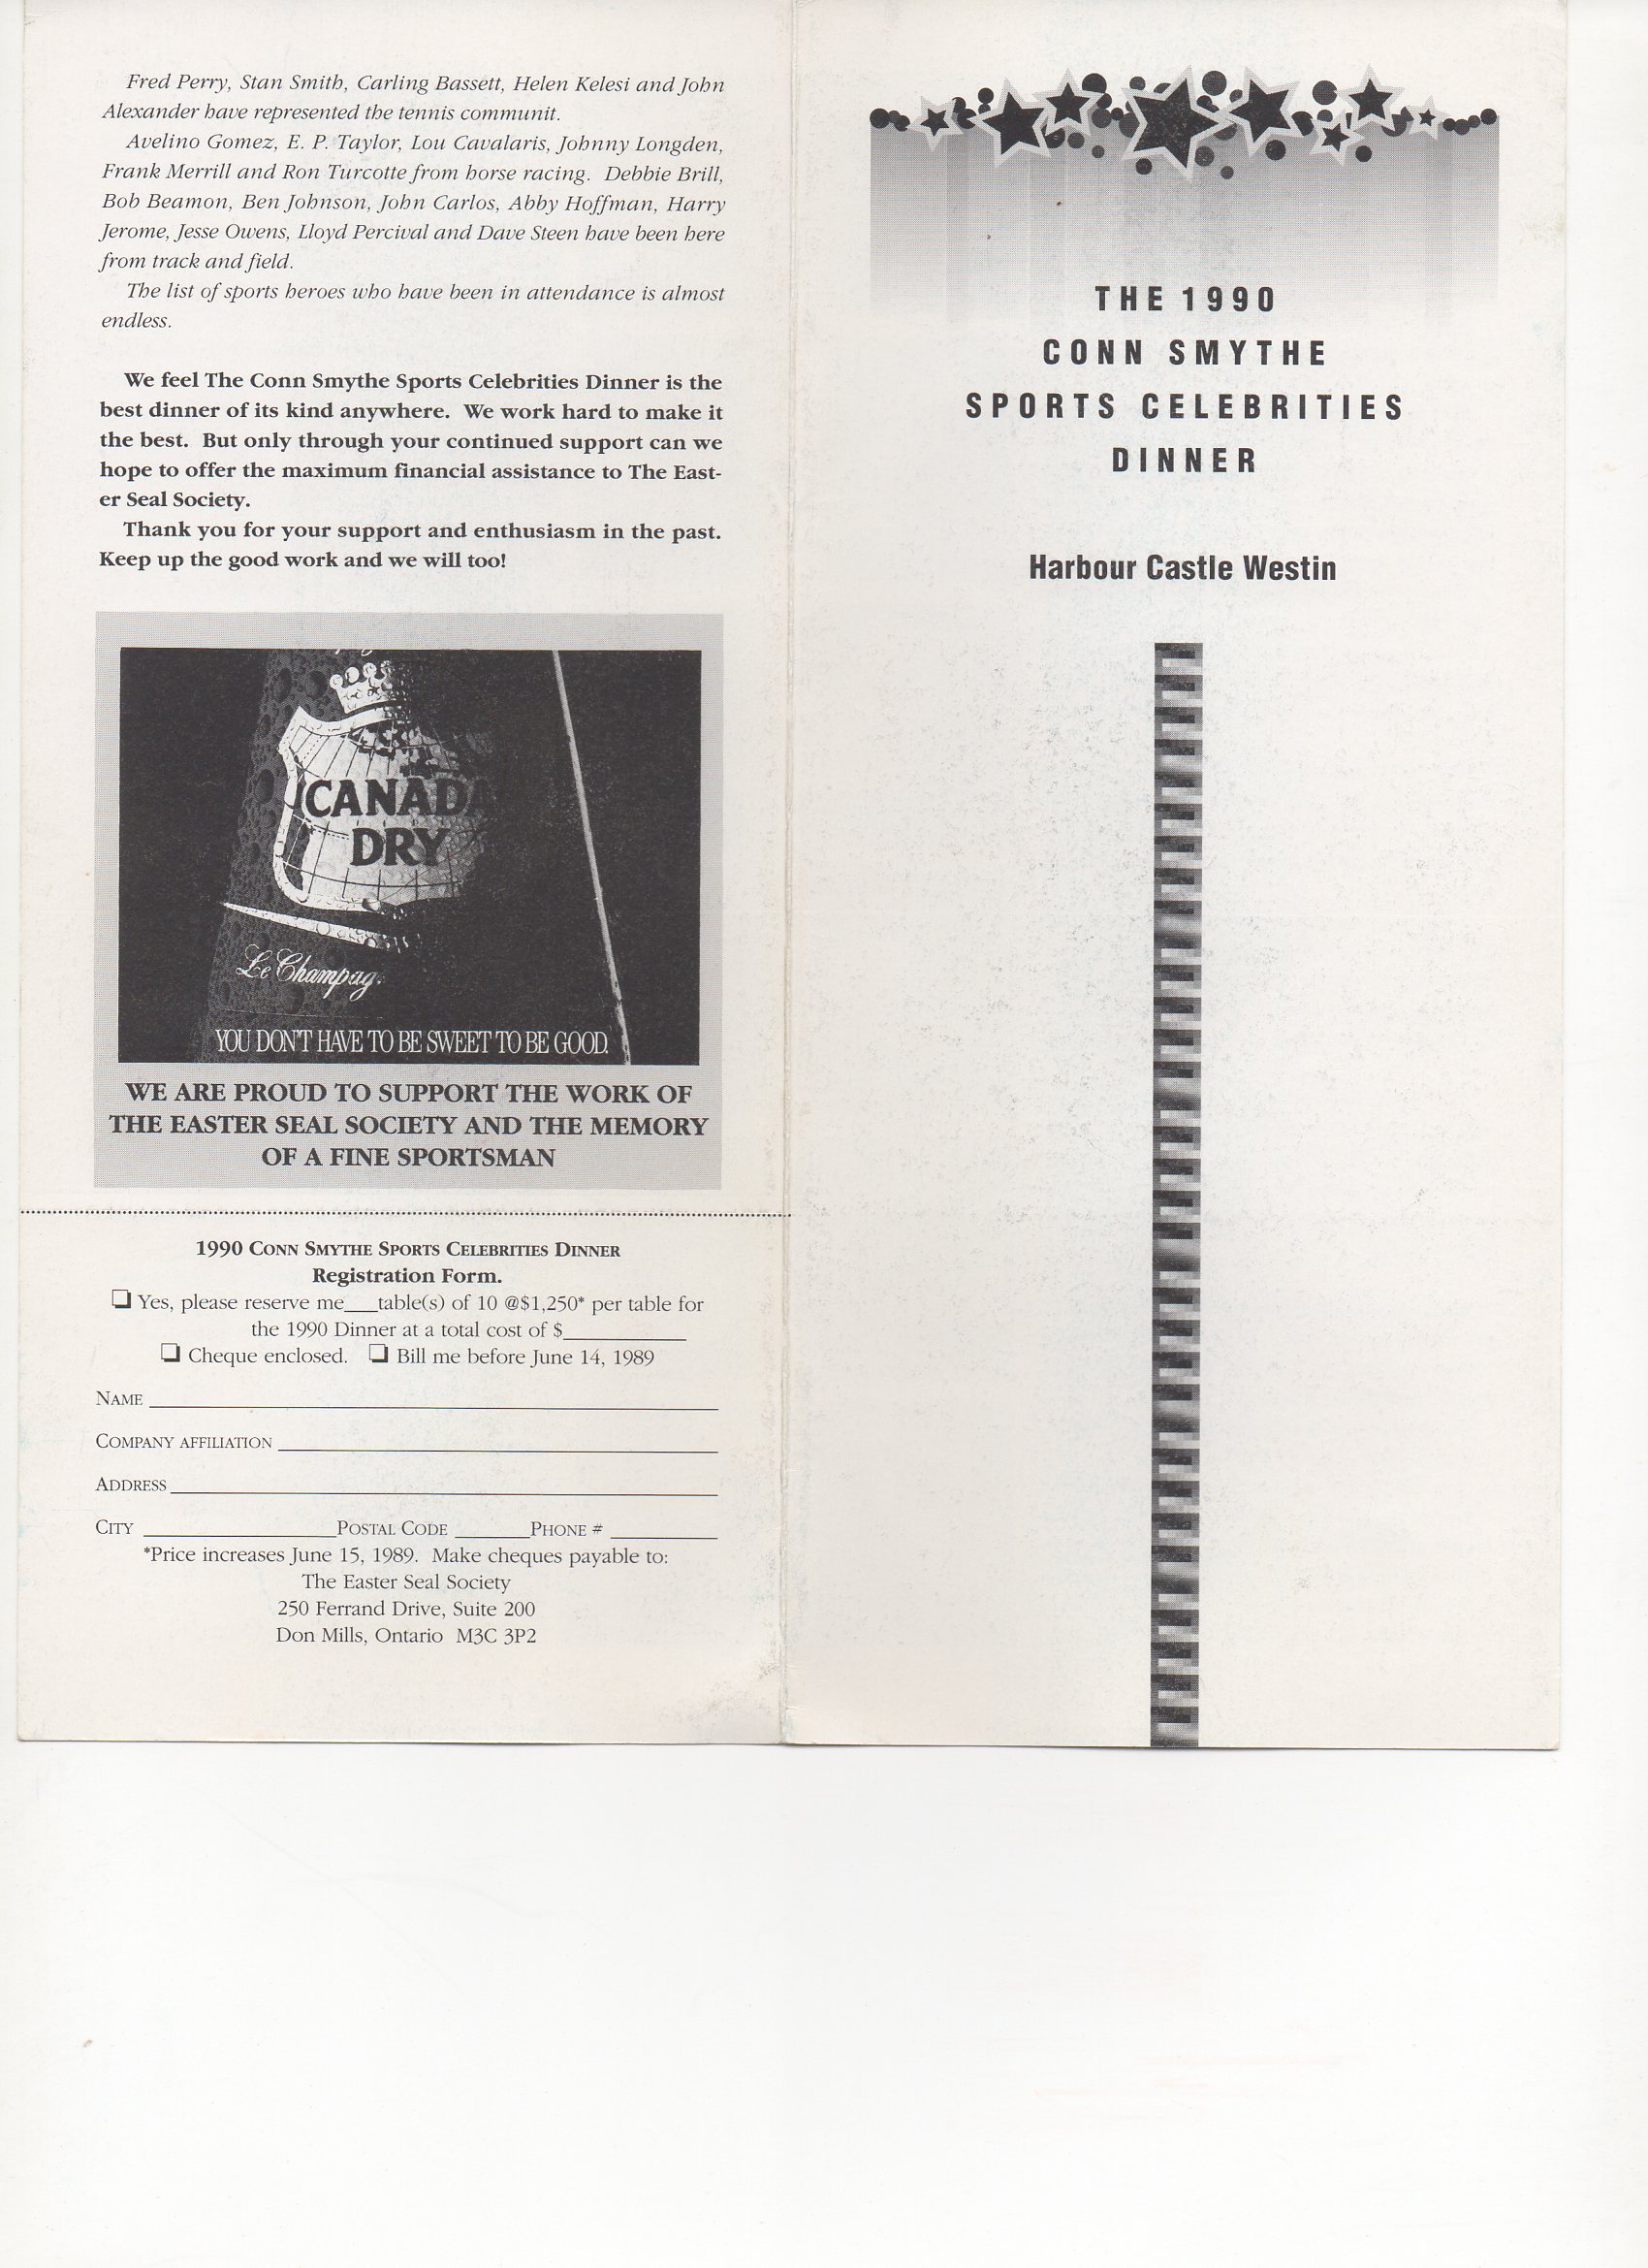 1990 conn smythe dinner, front and back